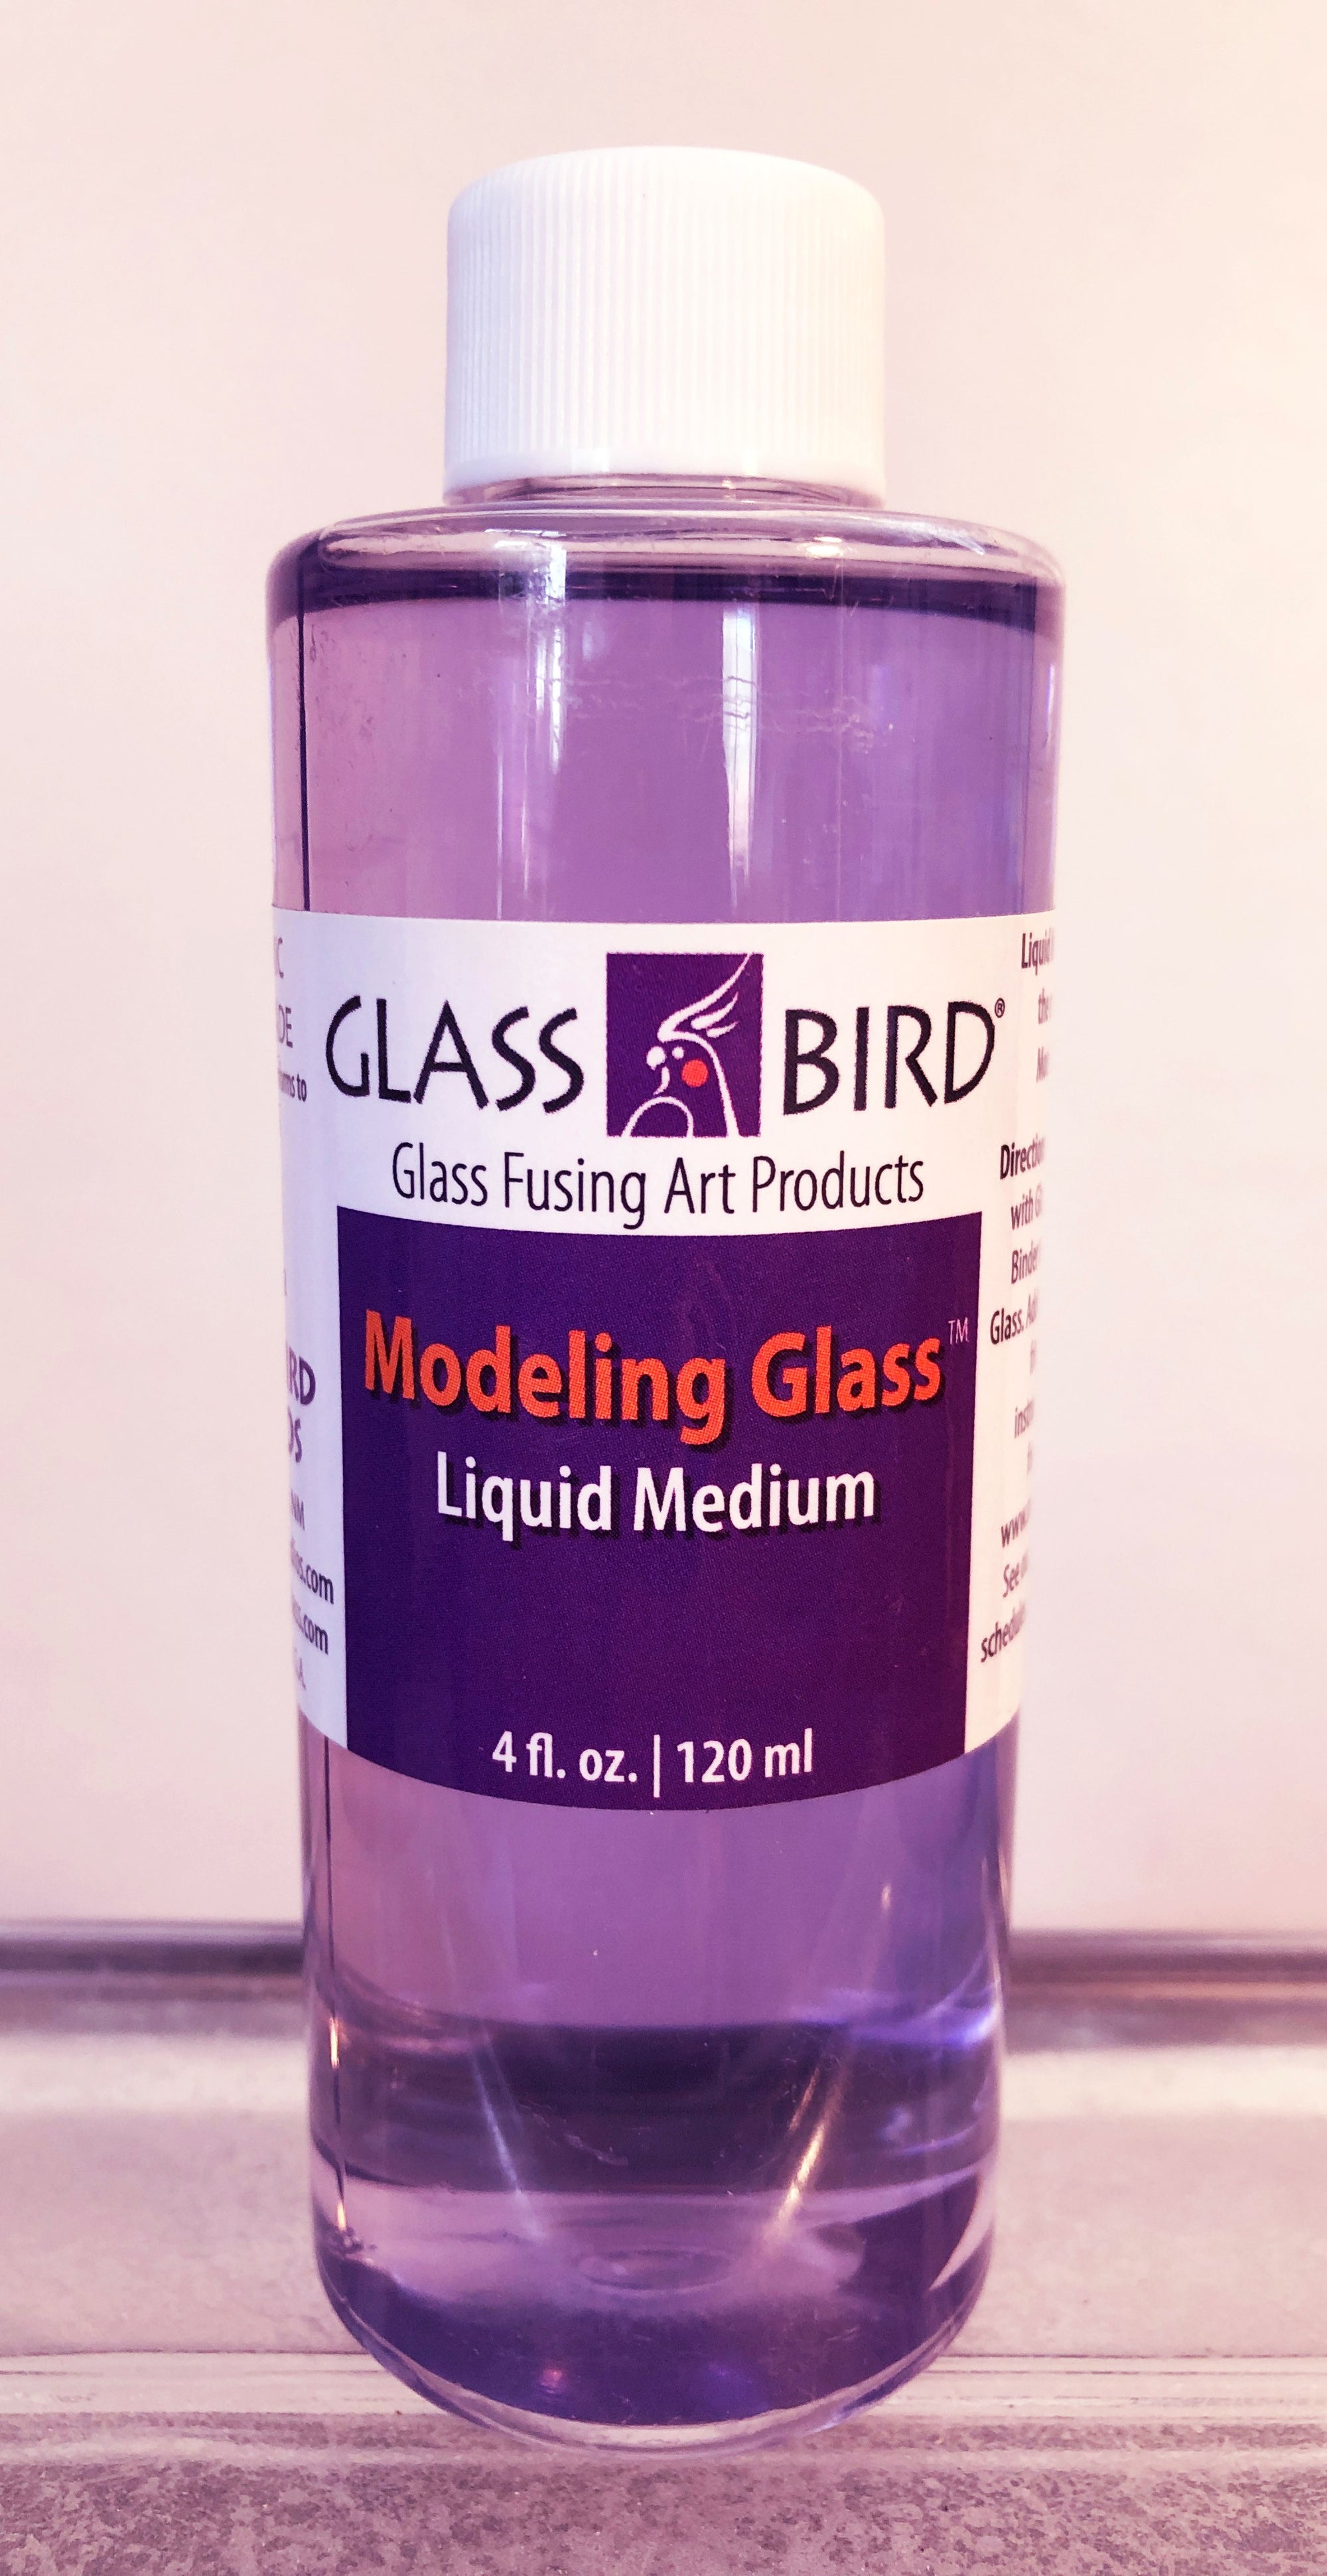 Glass Fusing Supplies